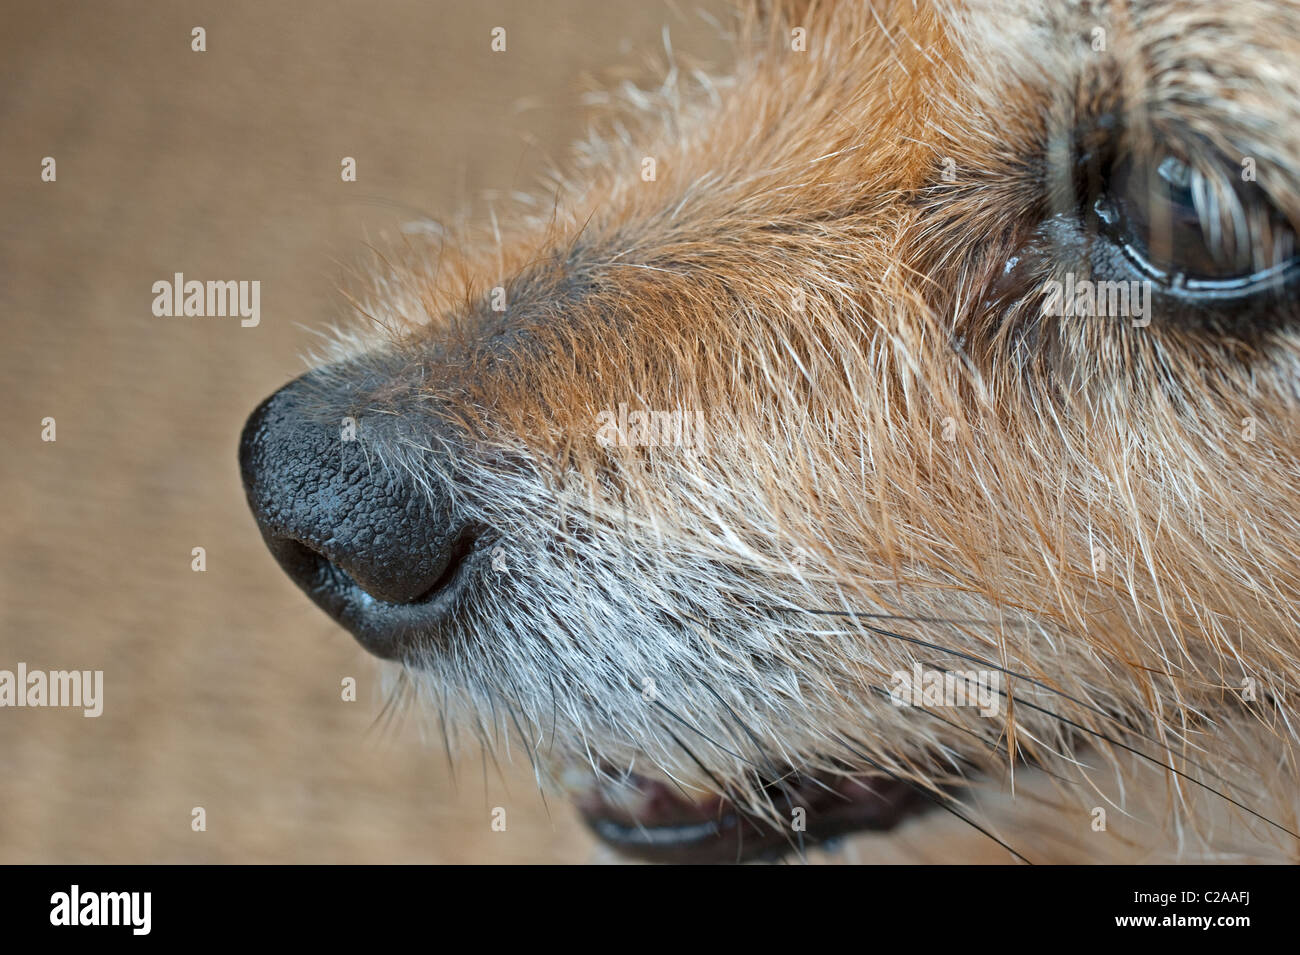 Le nez d'un chien est sans doute le plus important et sensible organe sensoriel Banque D'Images